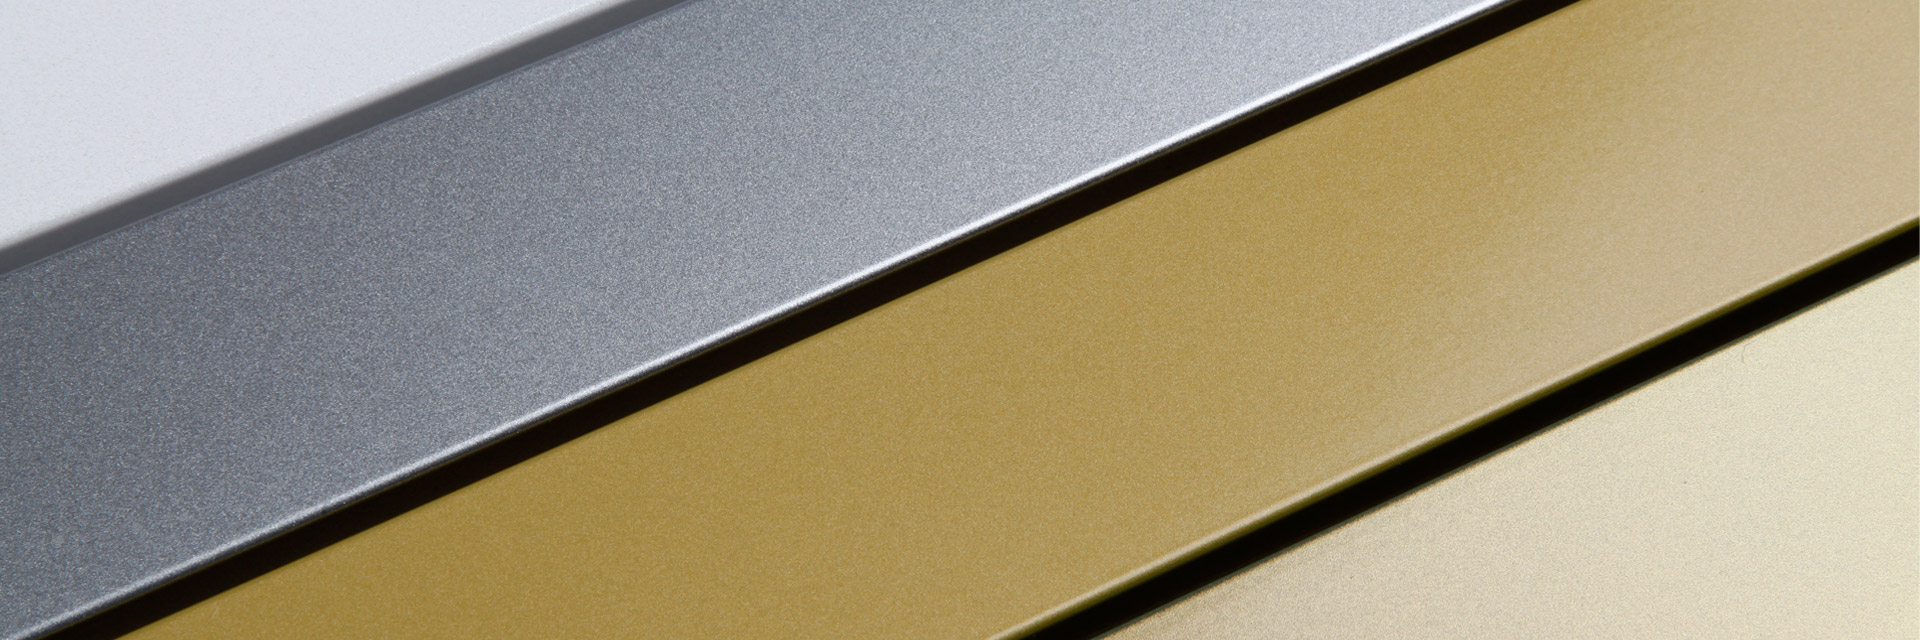 Profile lackiert mit goldenen und silbernen Tönen aus der Duraflon-Designserie